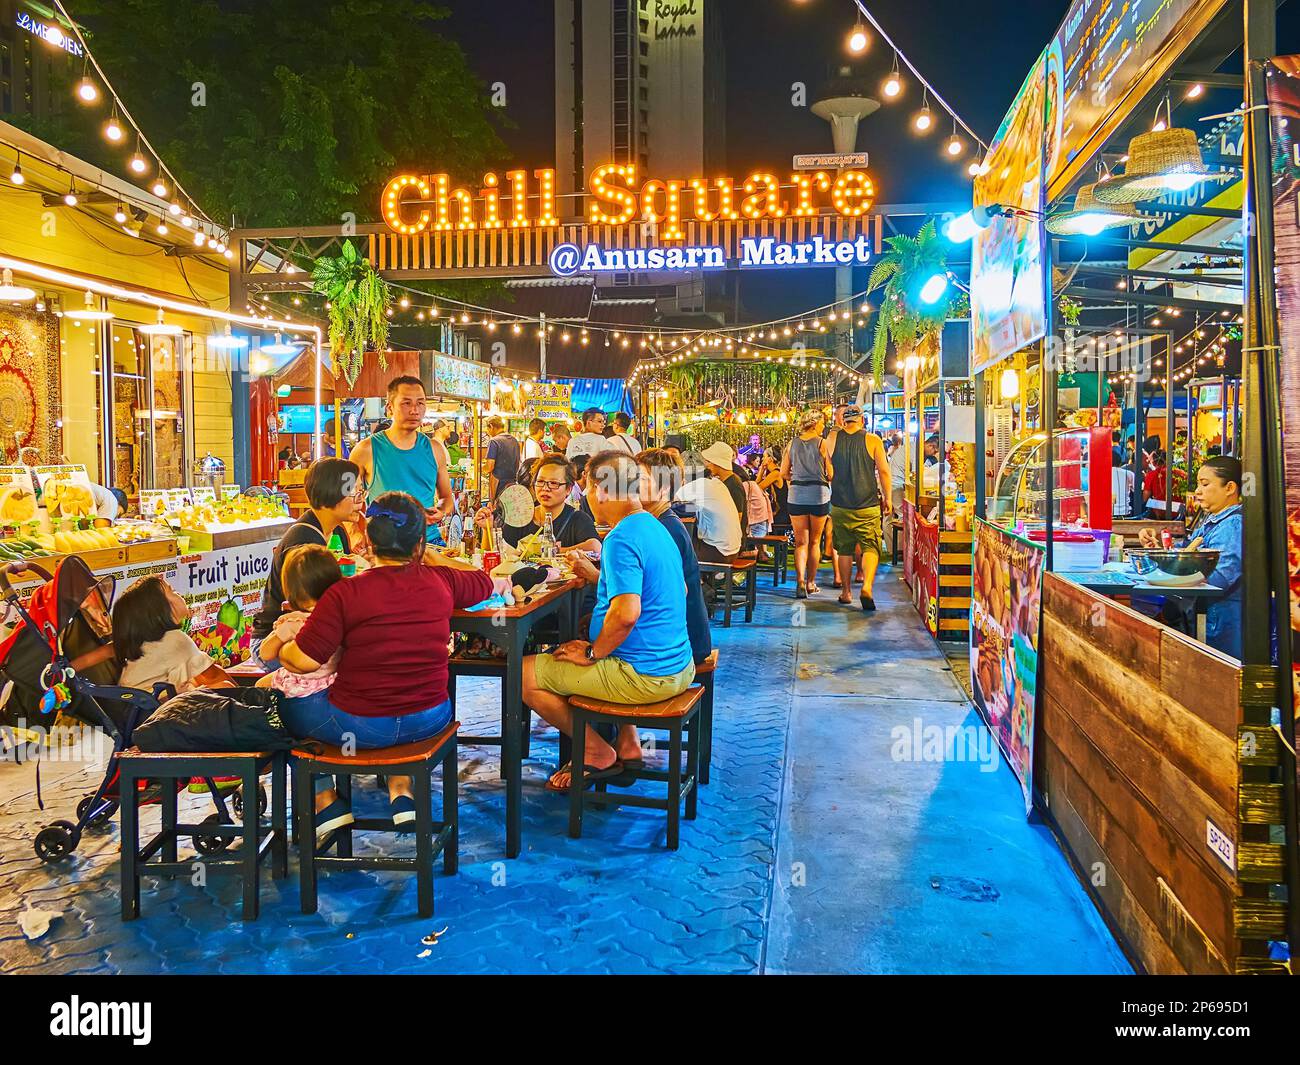 CHIANG MAI, THAILAND - 3. MAI 2019: Der überfüllte Food Court am Chill Square des Nachtmarkts Anusarn mit Imbissständen und Tischen von Cafés im Freien, auf Ma Stockfoto